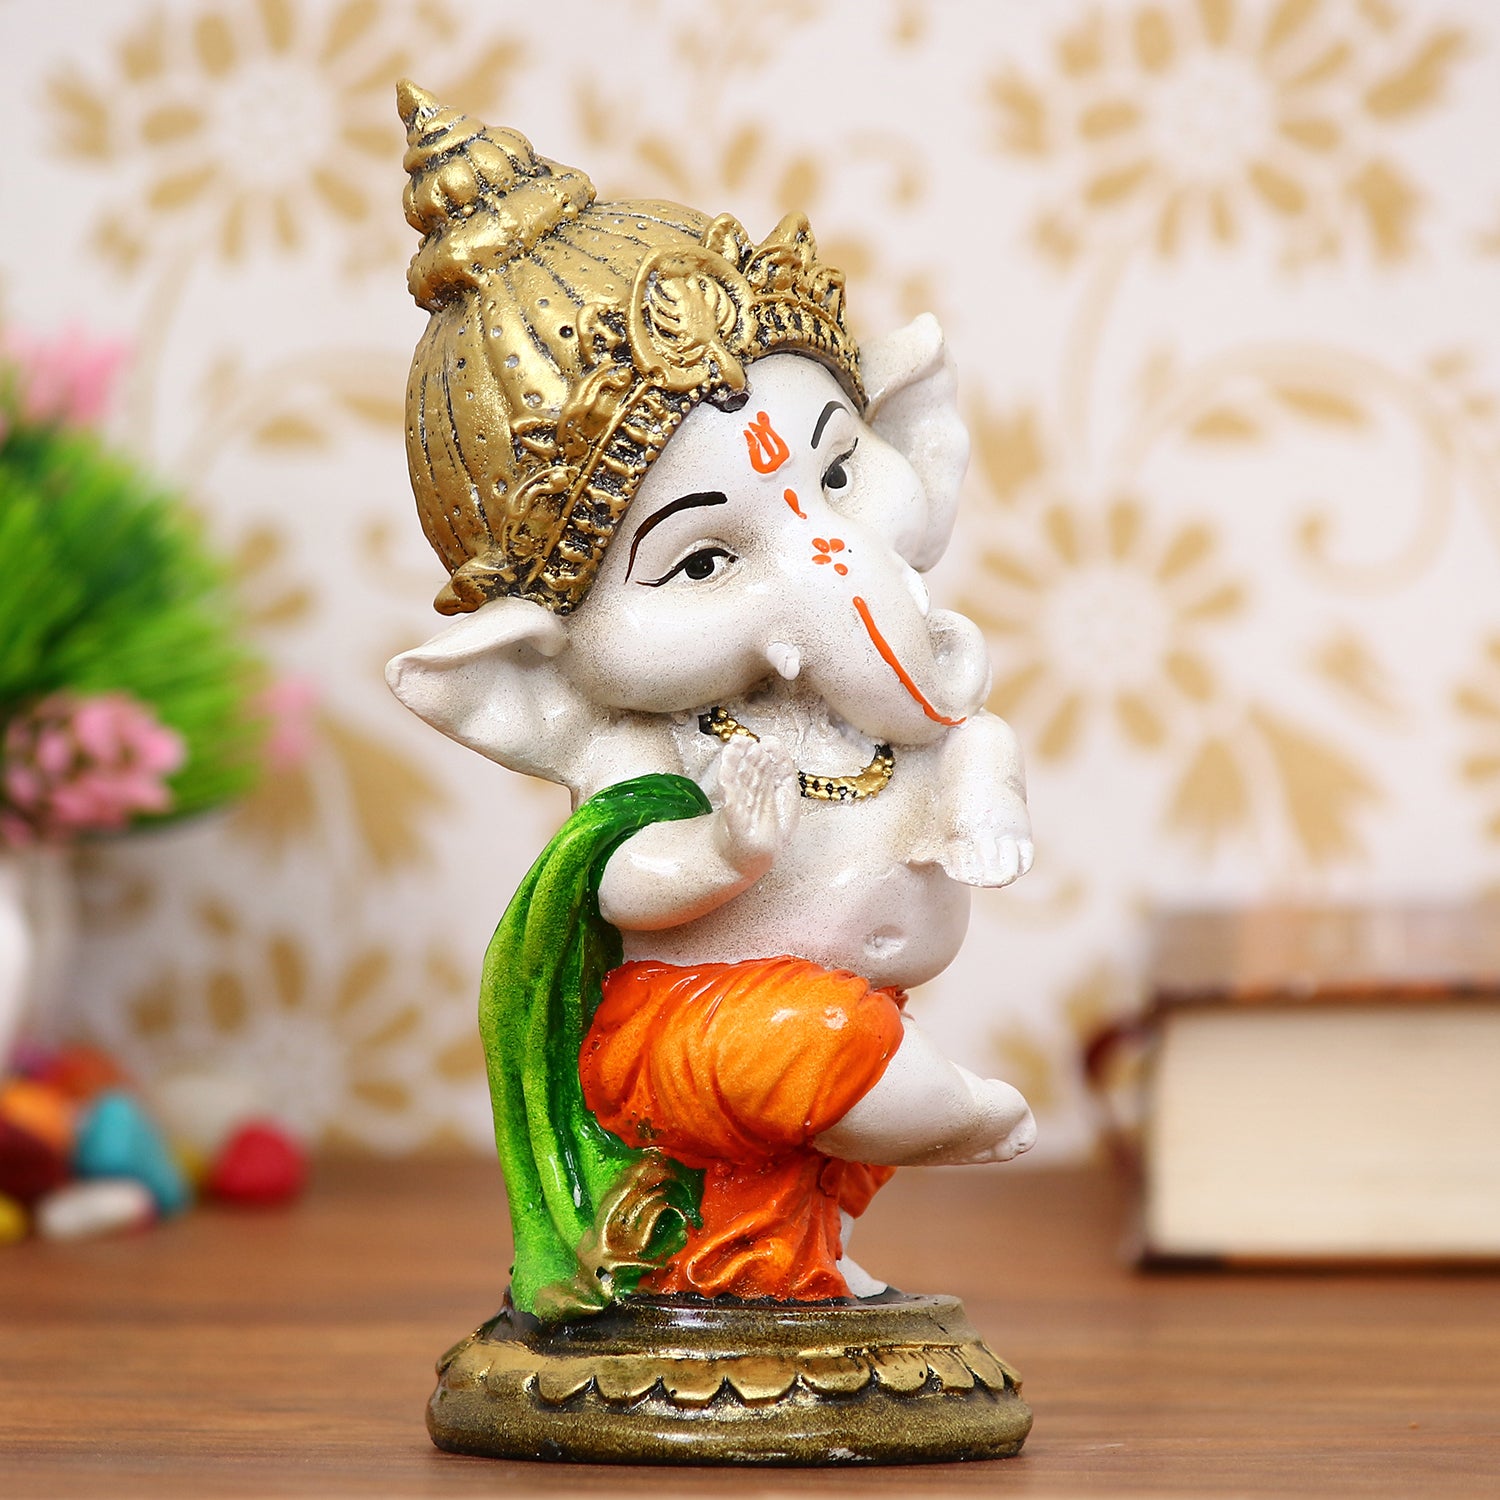 Lord Ganesha Idol In Dancing Avatar Decorative Showpiece 1